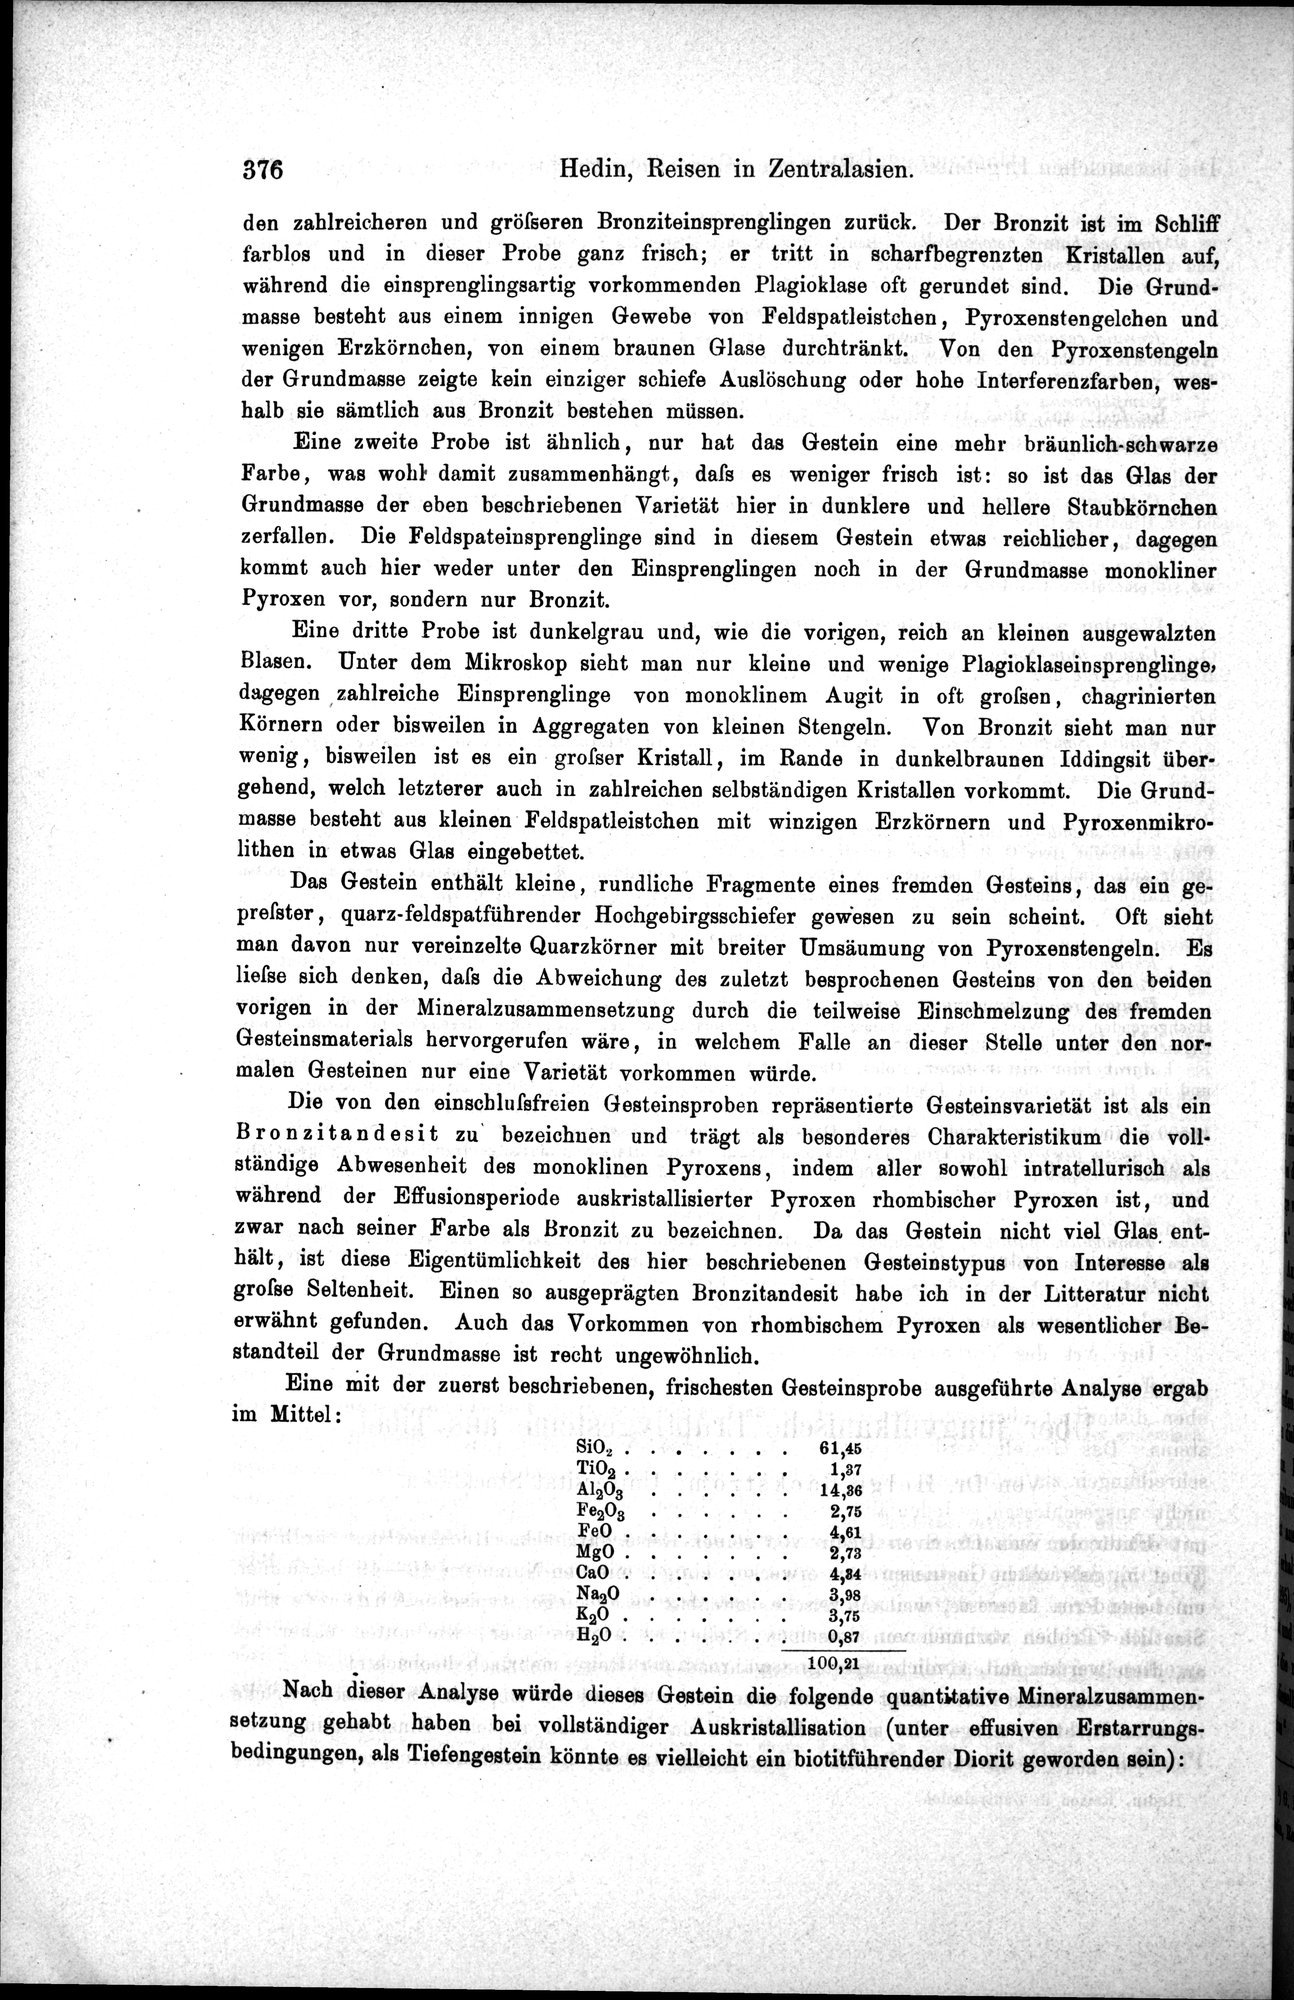 Die Geographische-Wissenschaftlichen Ergebnisse meiner Reisen in Zentralasien, 1894-1897 : vol.1 / Page 388 (Grayscale High Resolution Image)